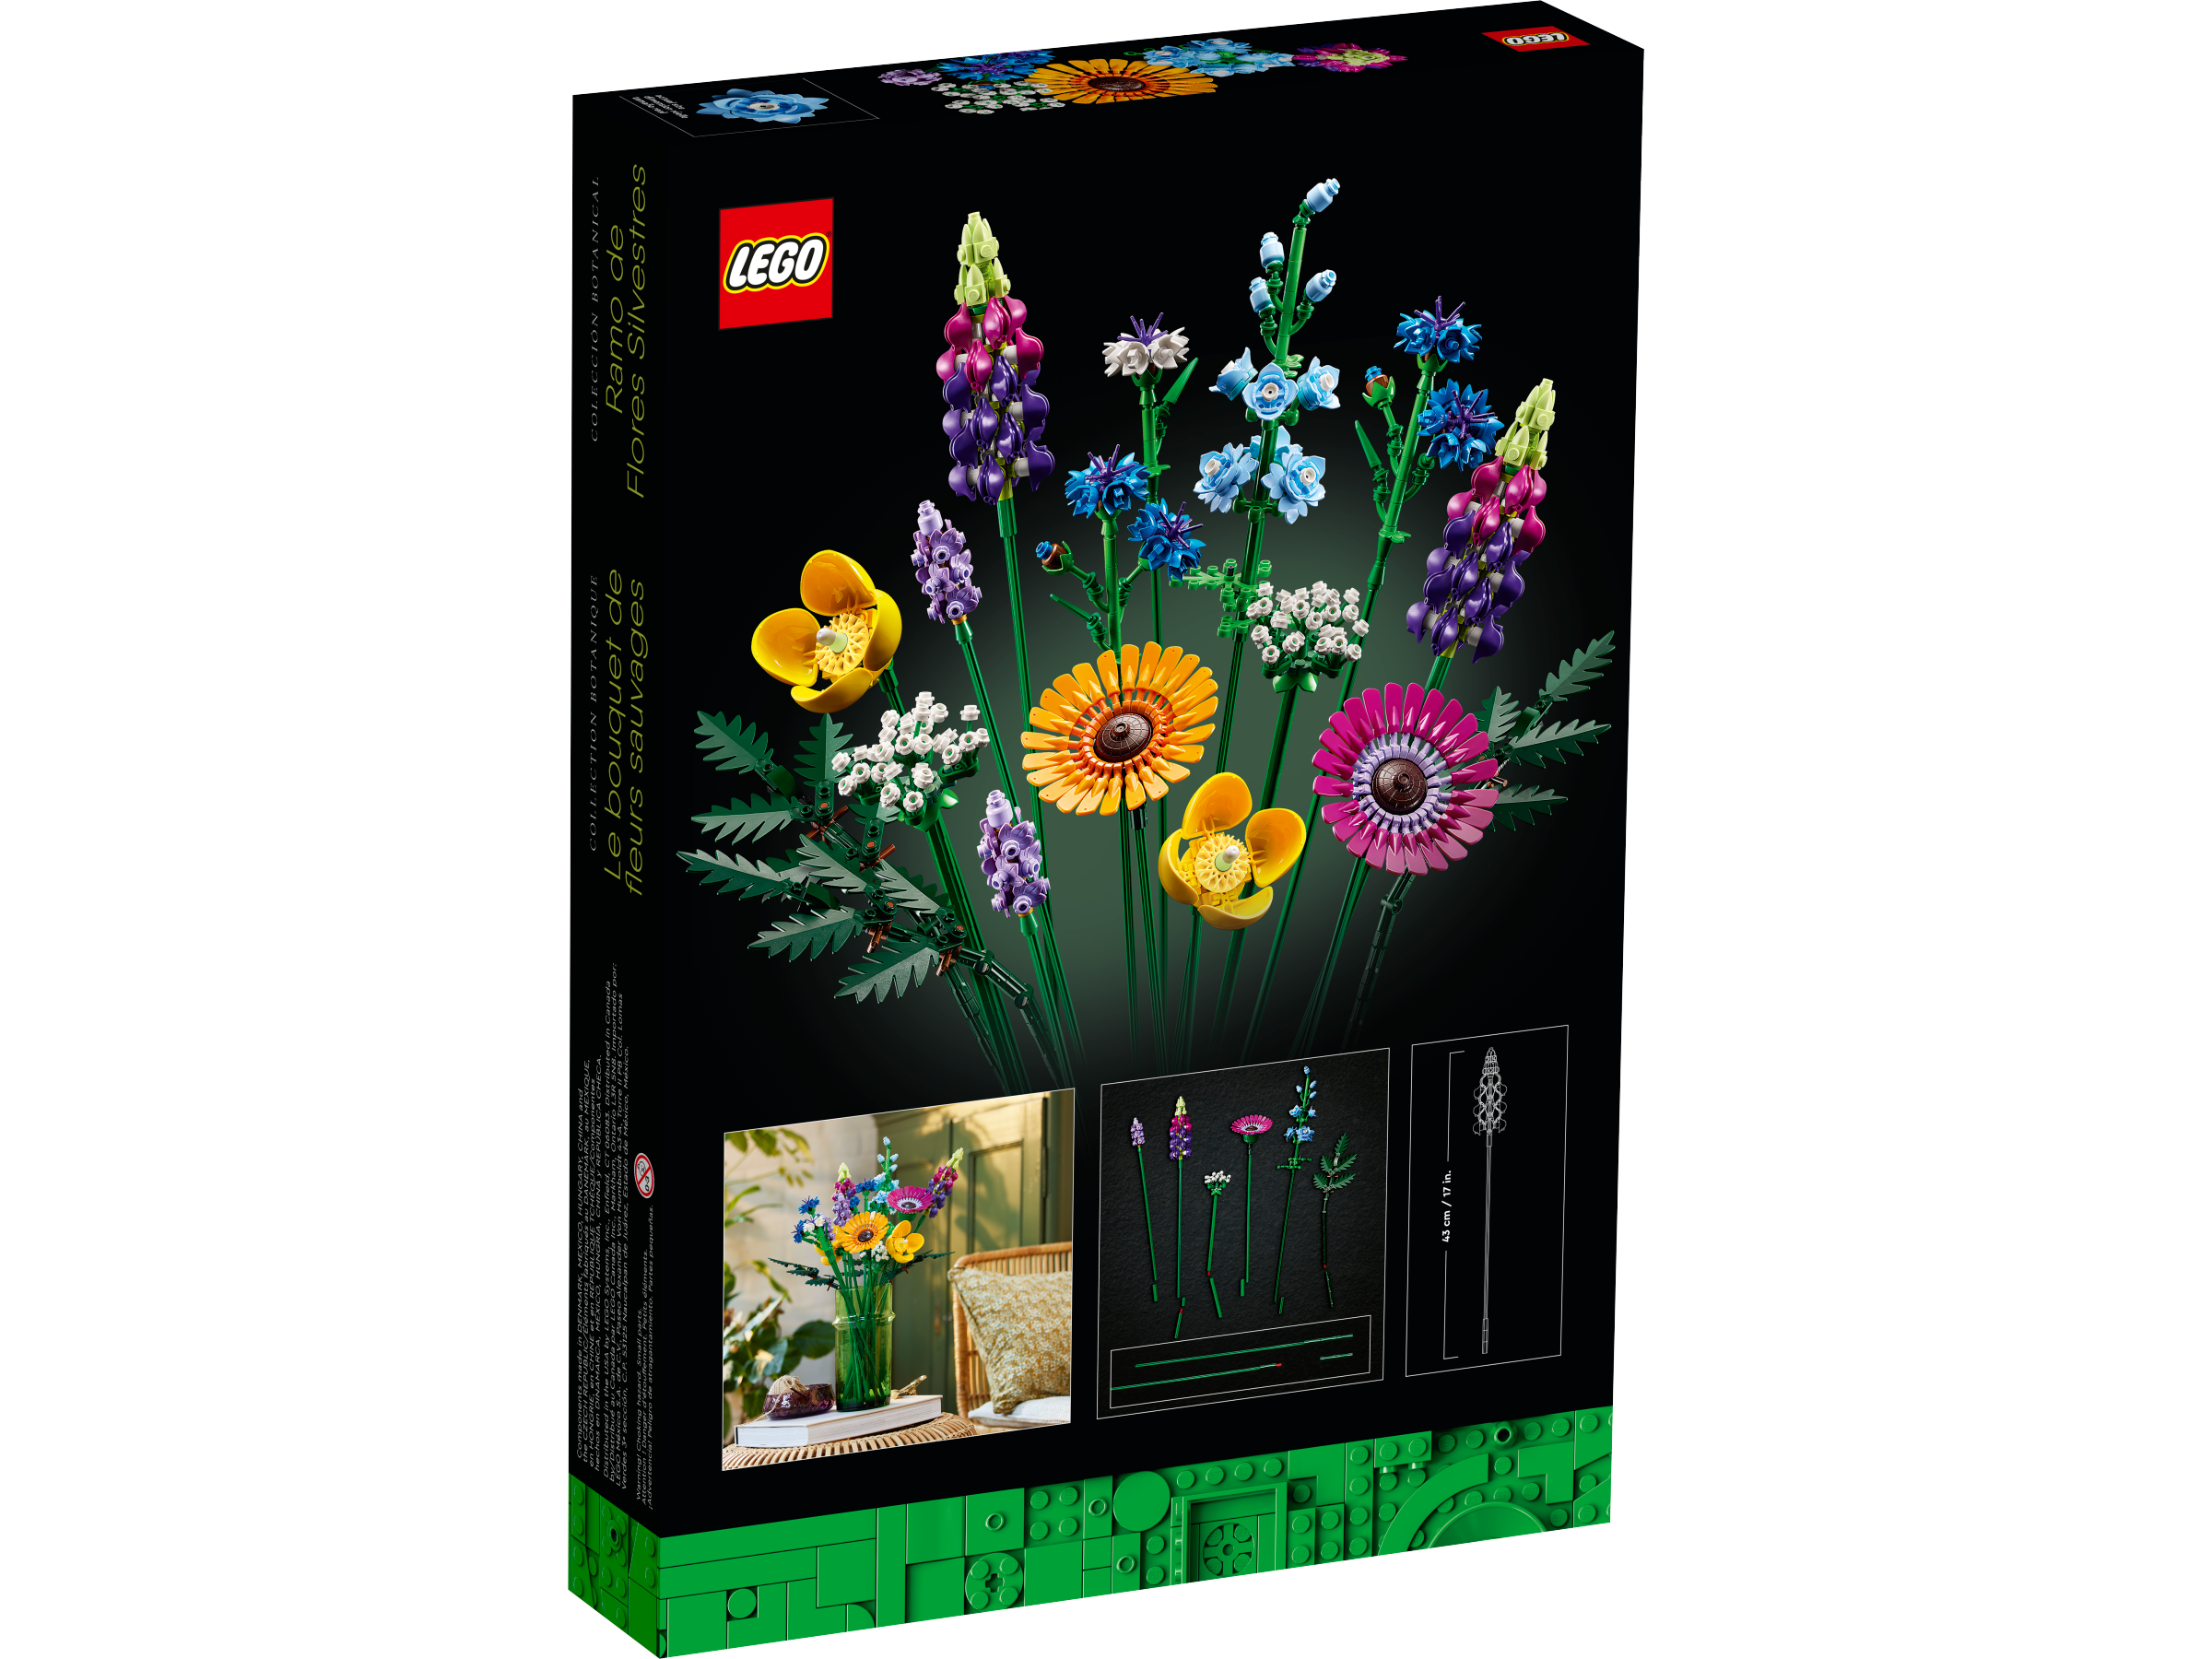 LEGO, Costruzioni, Bouquet fiori selvatici, 10313A - Giocattoli